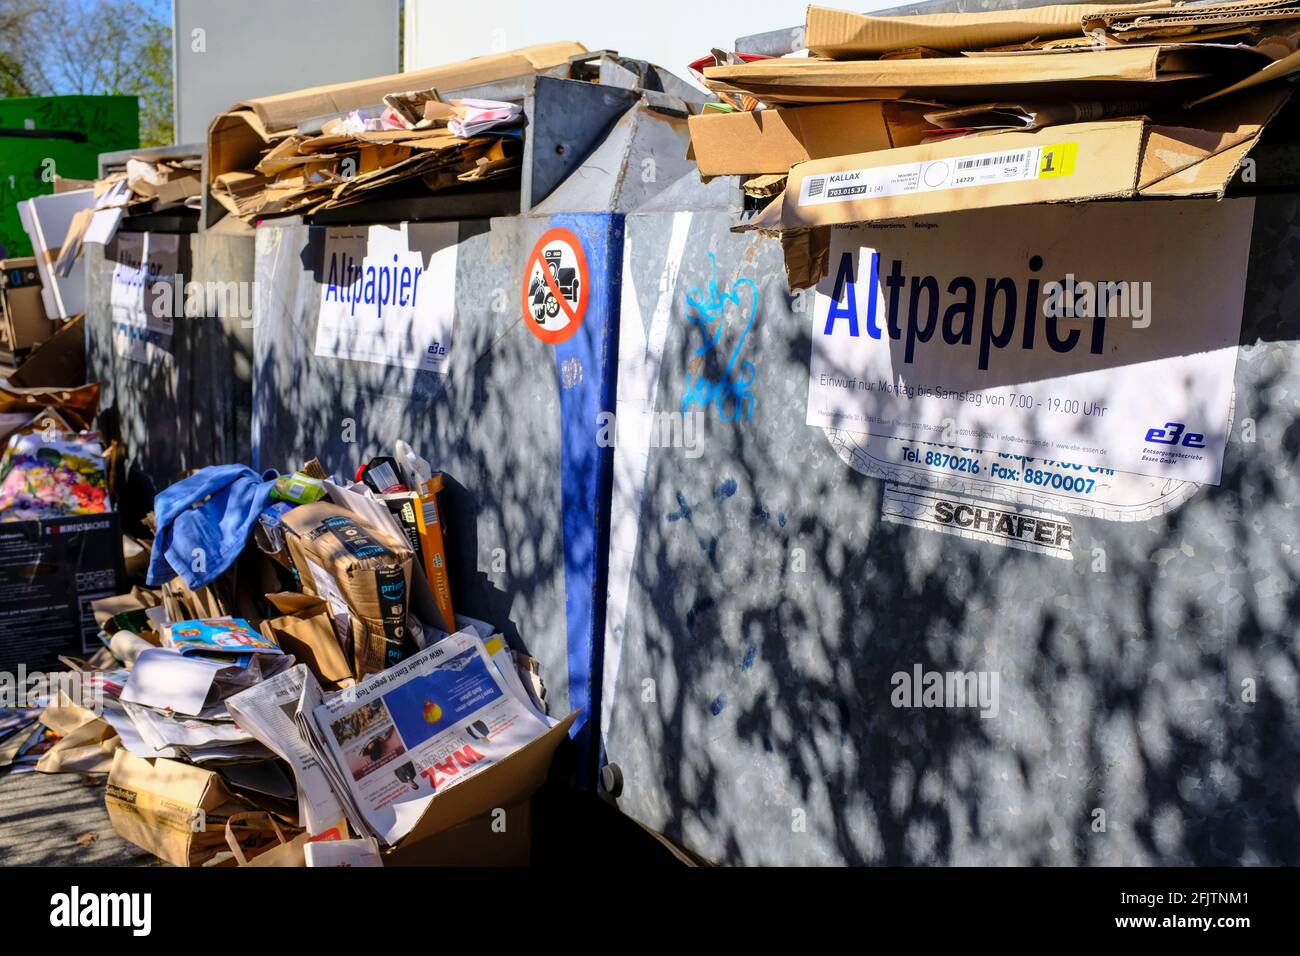 26.04.2021, Essen, Ruhrgebiet, Nordrhein-Westfalen, Deutschland - überfüllte Altpapiercontainer, aus denen vor allem die Pappe von Kartons quillt, in Stock Photo